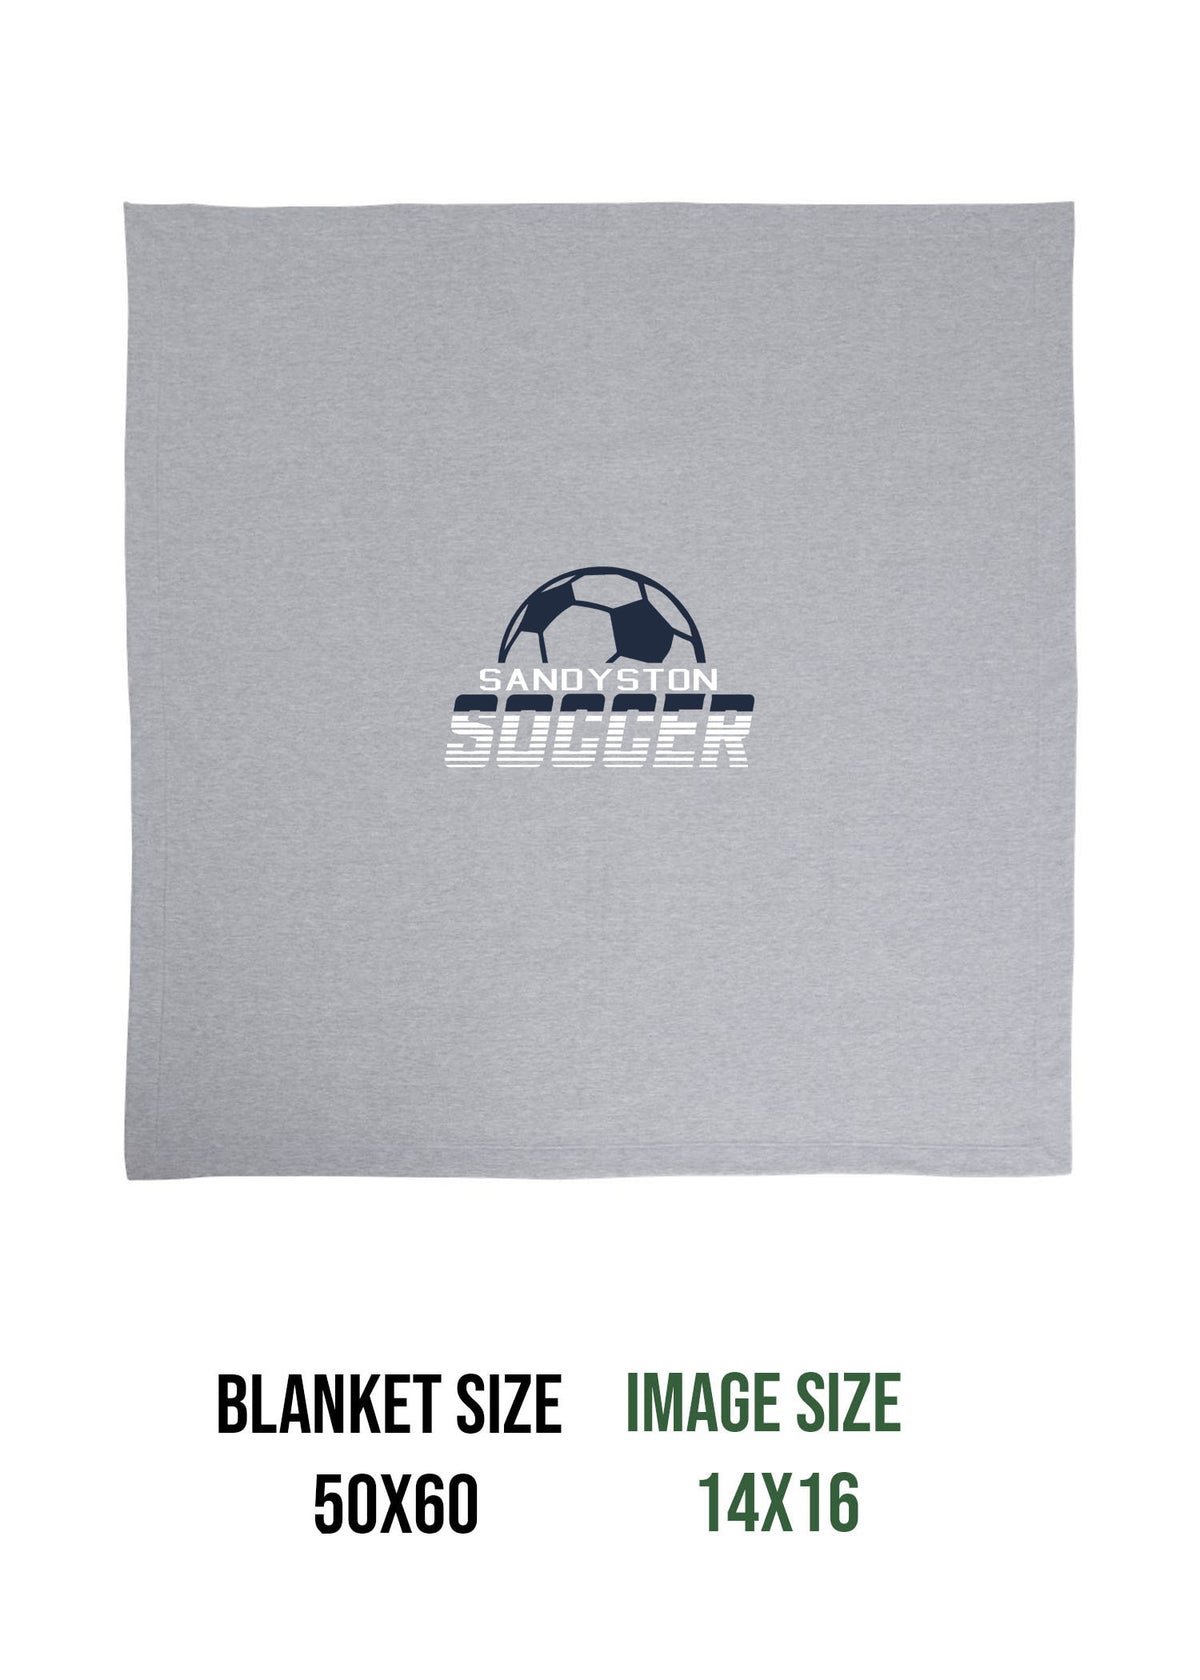 Sandyston Soccer Design 3 Blanket